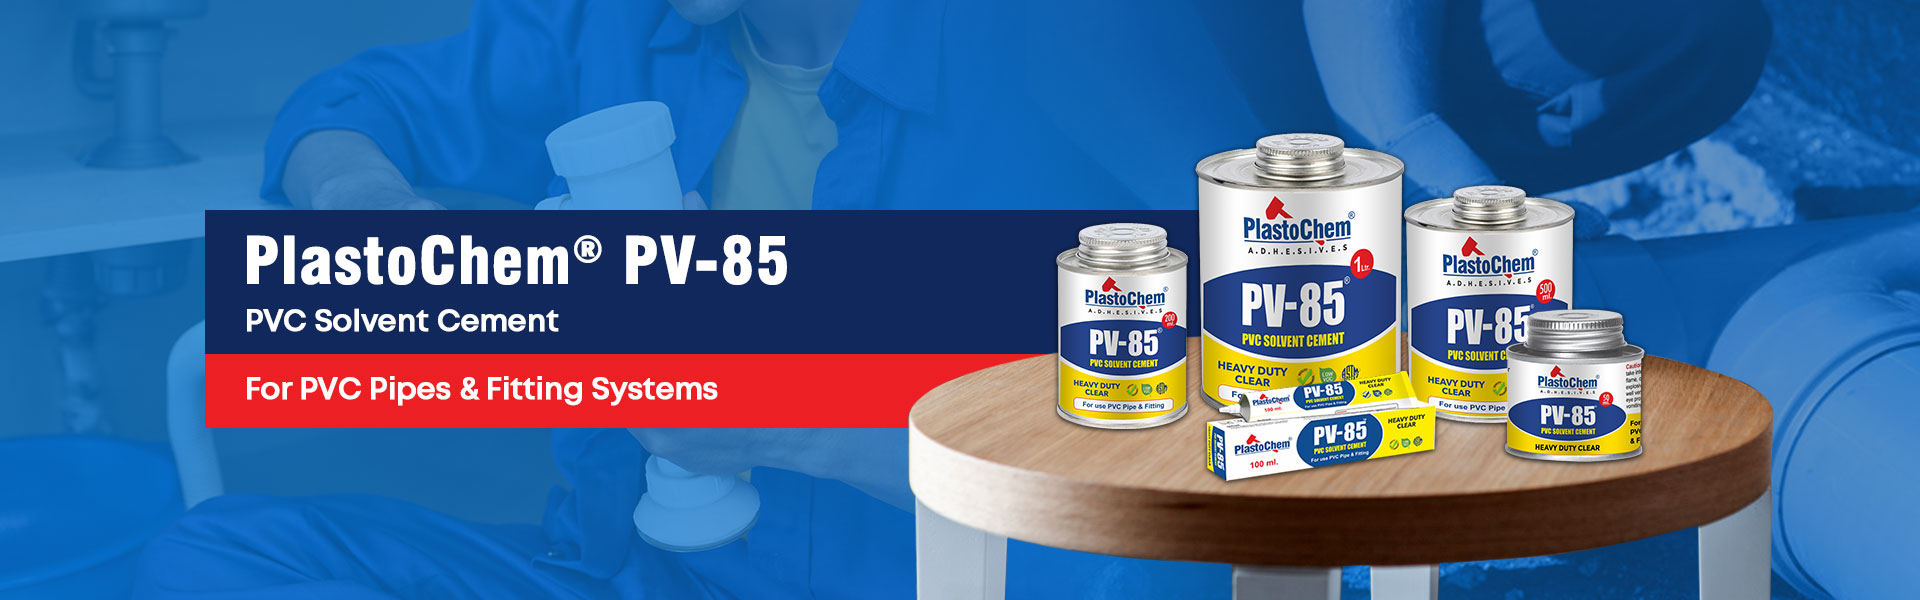 pv 85 pvc solvent cement